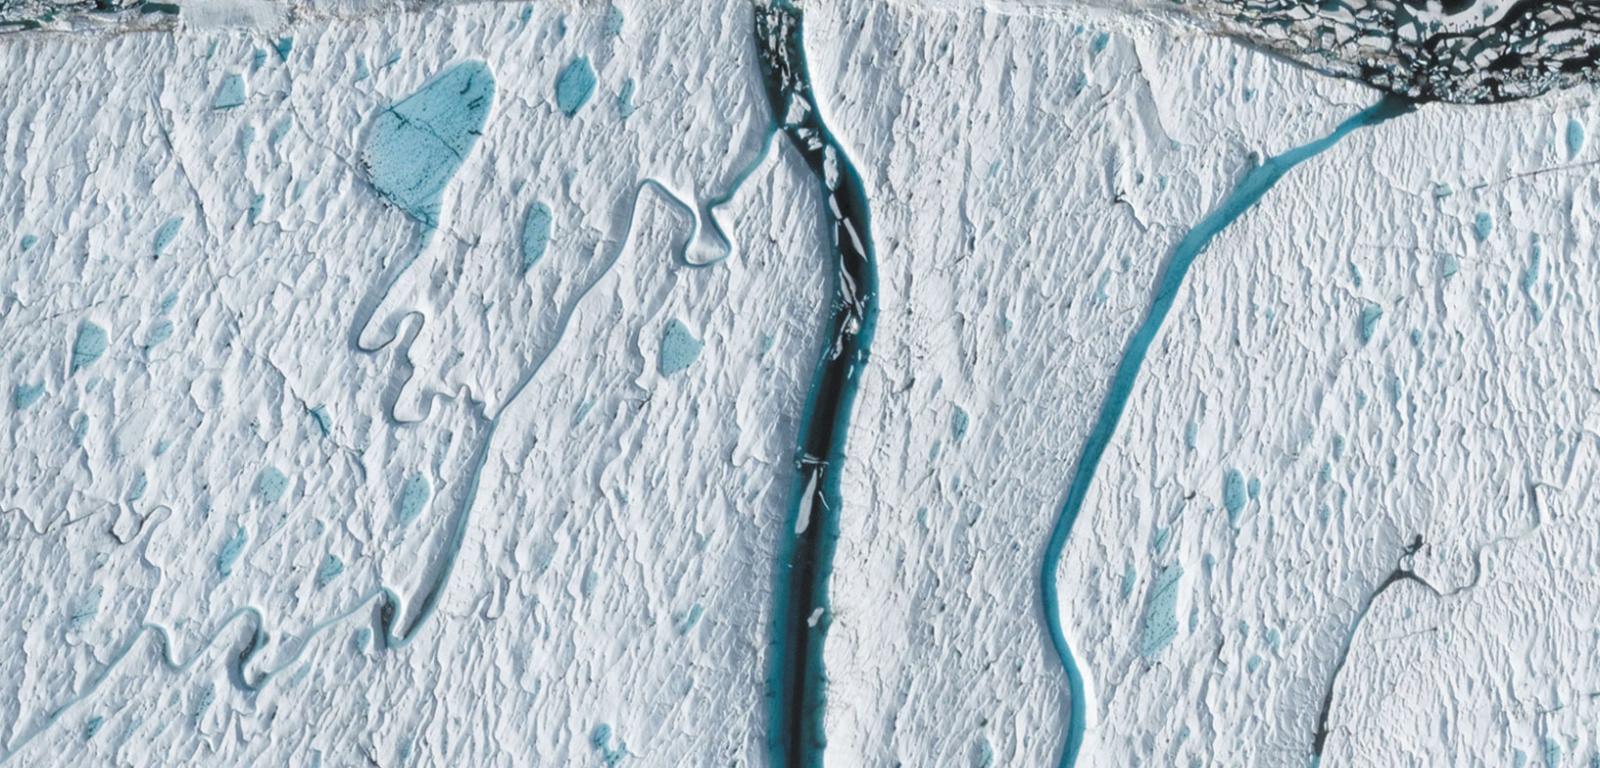 Obraz z Google Earth pokazujący cofającą się rzekę roztopową, która przecięła lodowiec szelfowy.